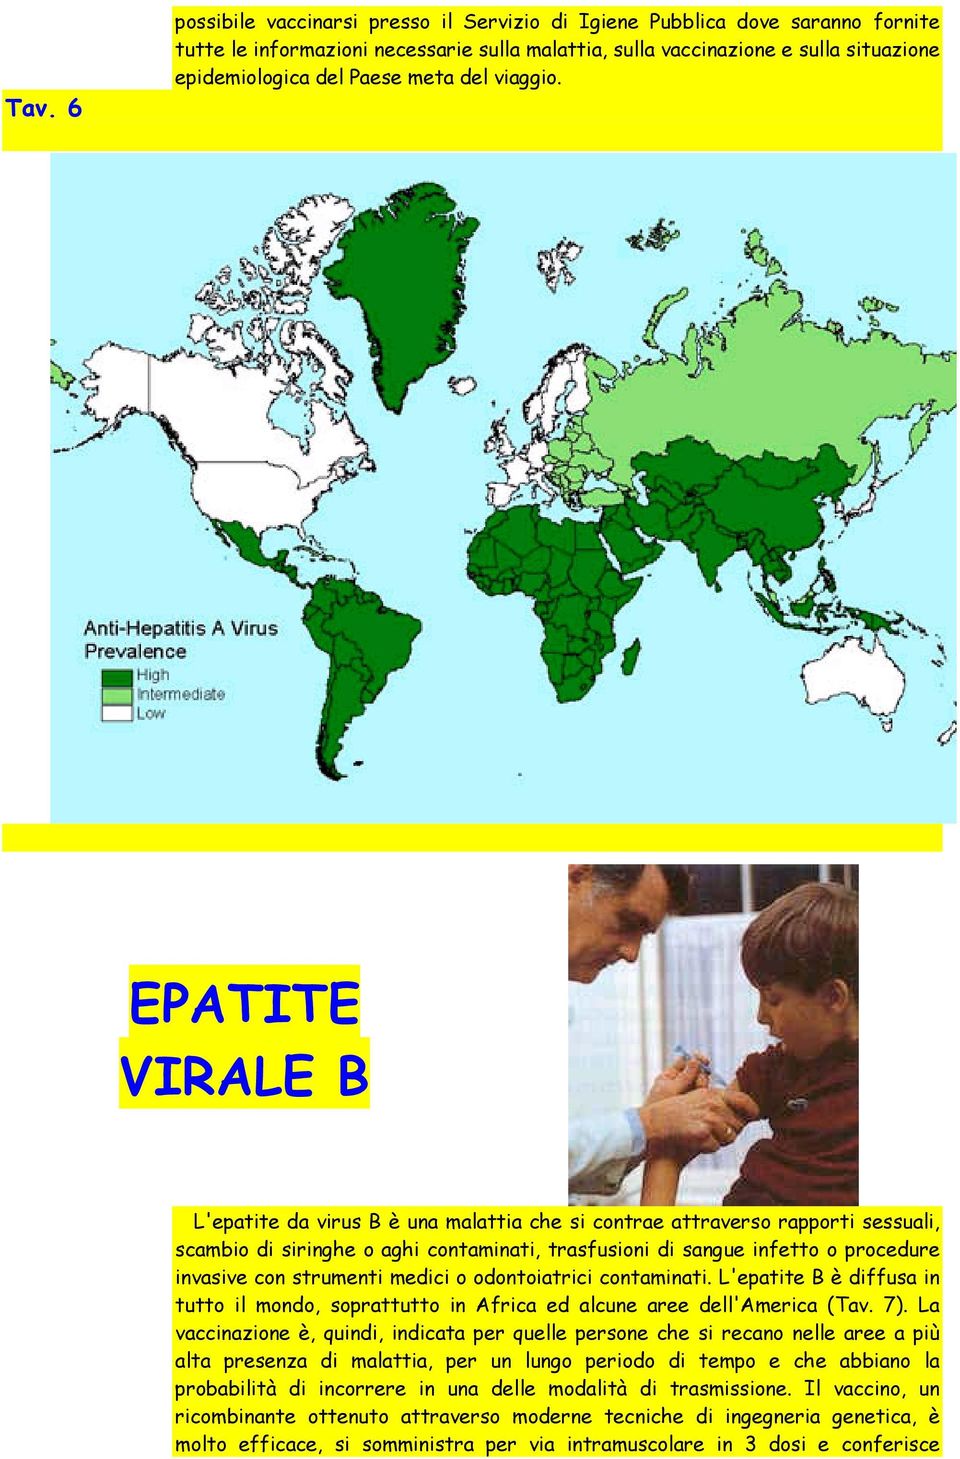 EPATITE VIRALE B L'epatite da virus B è una malattia che si contrae attraverso rapporti sessuali, scambio di siringhe o aghi contaminati, trasfusioni di sangue infetto o procedure invasive con